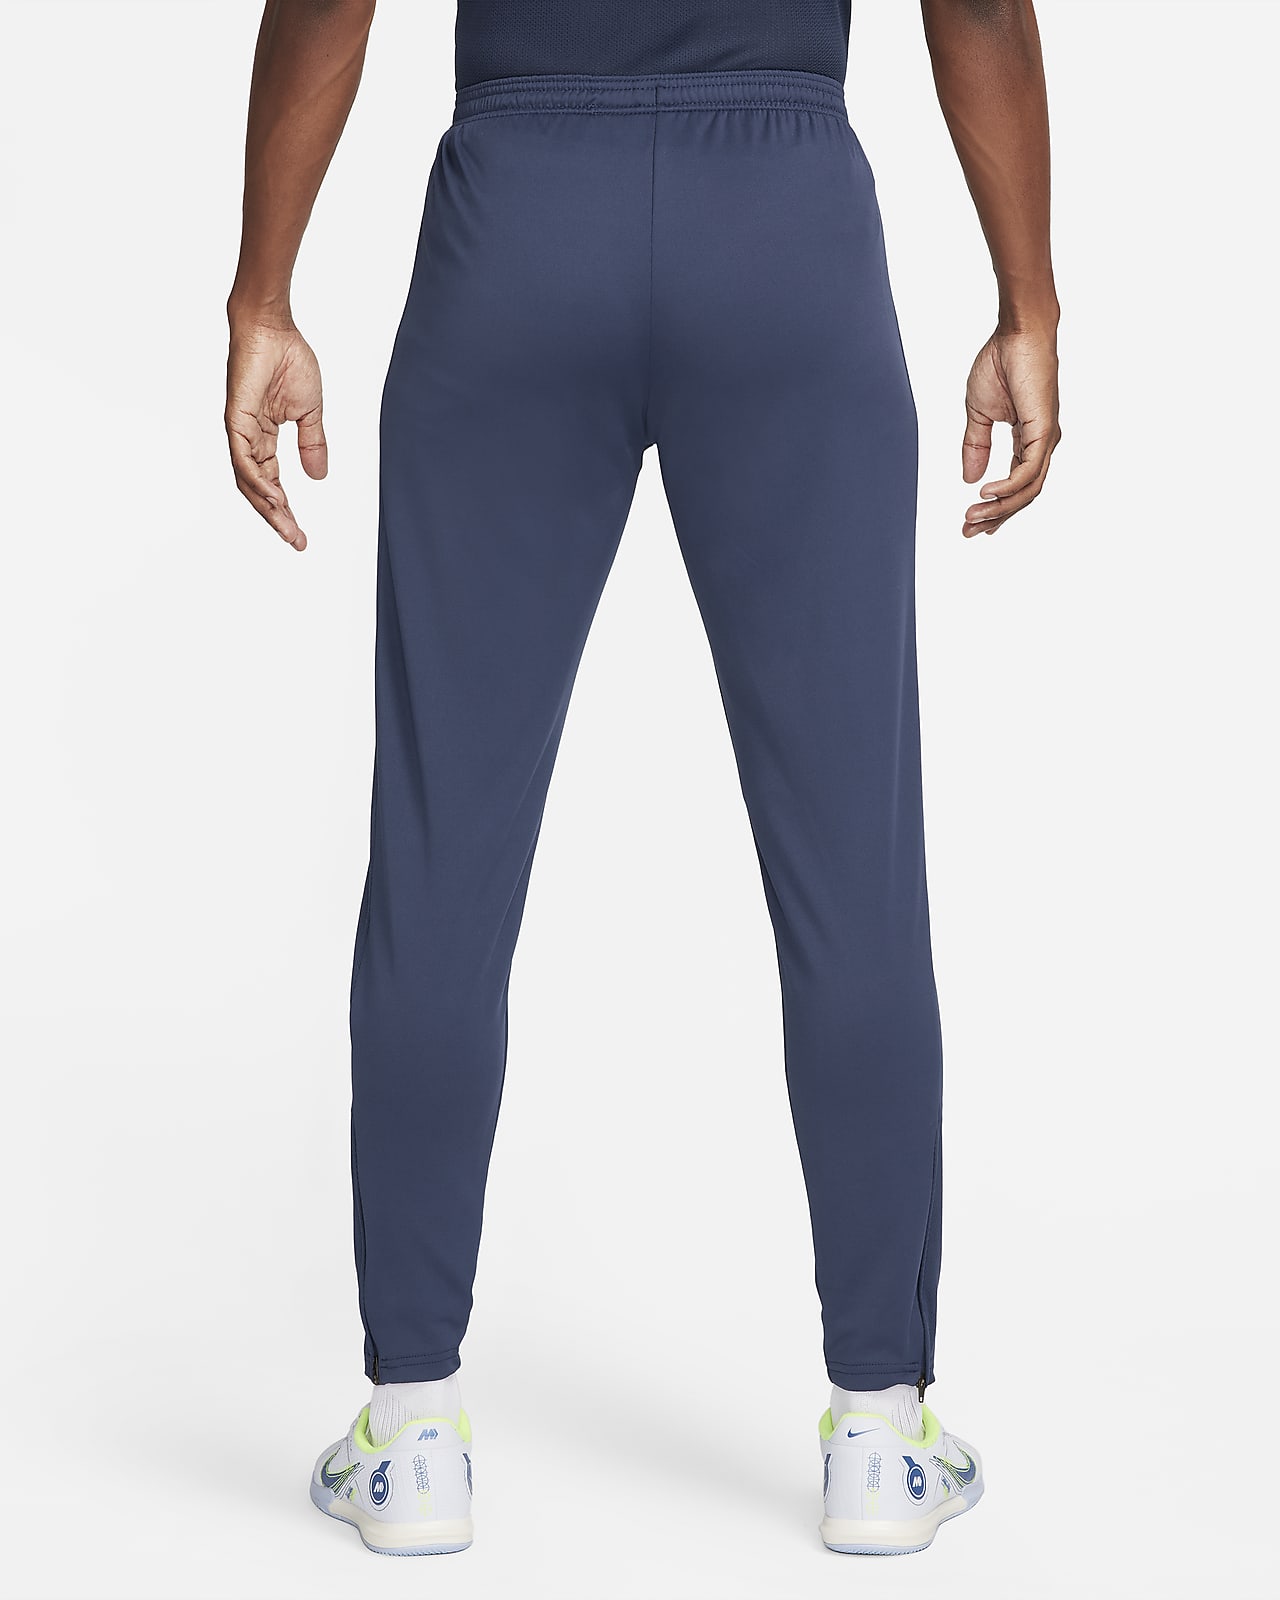 Nike Men's Training Pants.